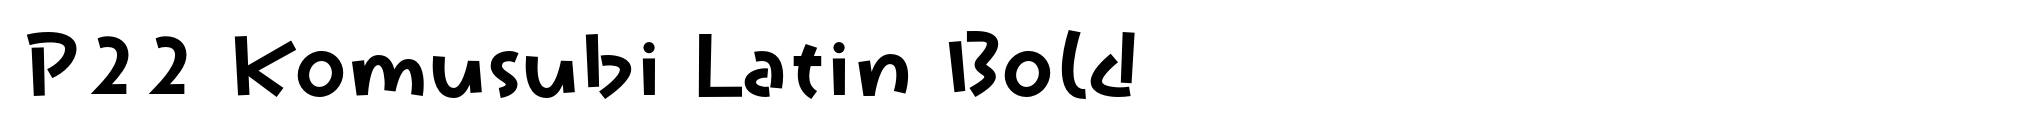 P22 Komusubi Latin Bold image